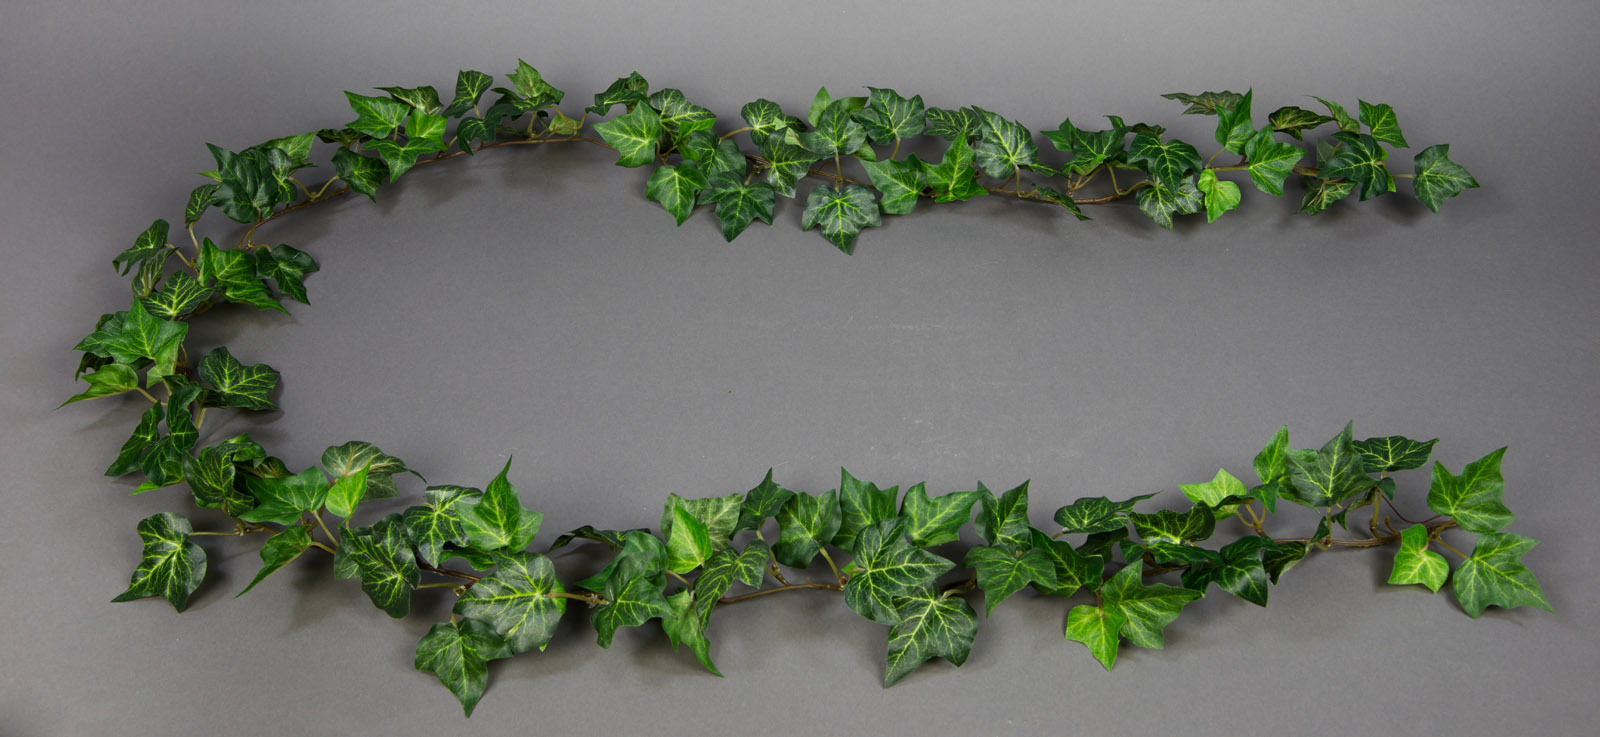 Waldefeugirlande 180cm grün DA Kunstpflanzen künstliches Efeu